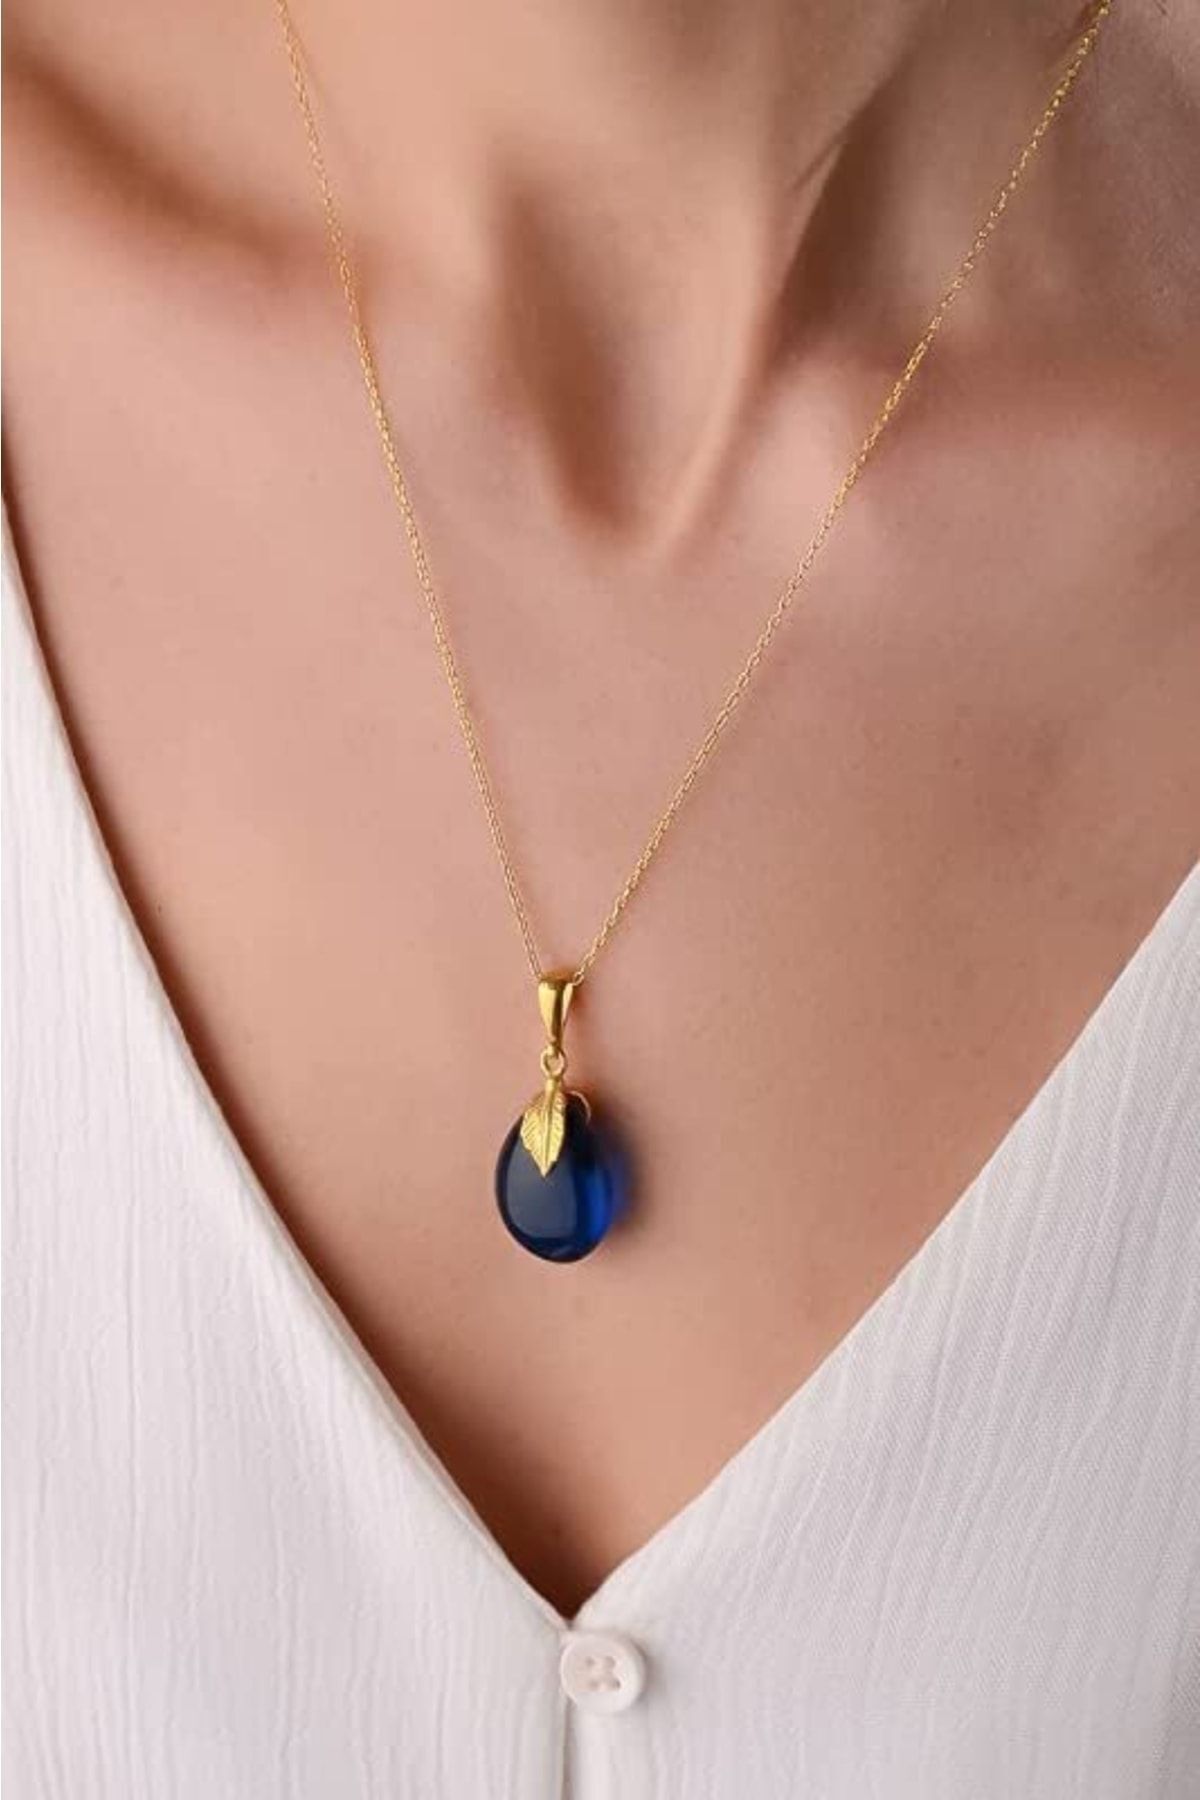 Amberistan Yetişkin Mavi Kehribar Kolye – Altın Kaplama Gümüş Zincir, Kehribar Mücevher, Kehribar Taşlı Takı